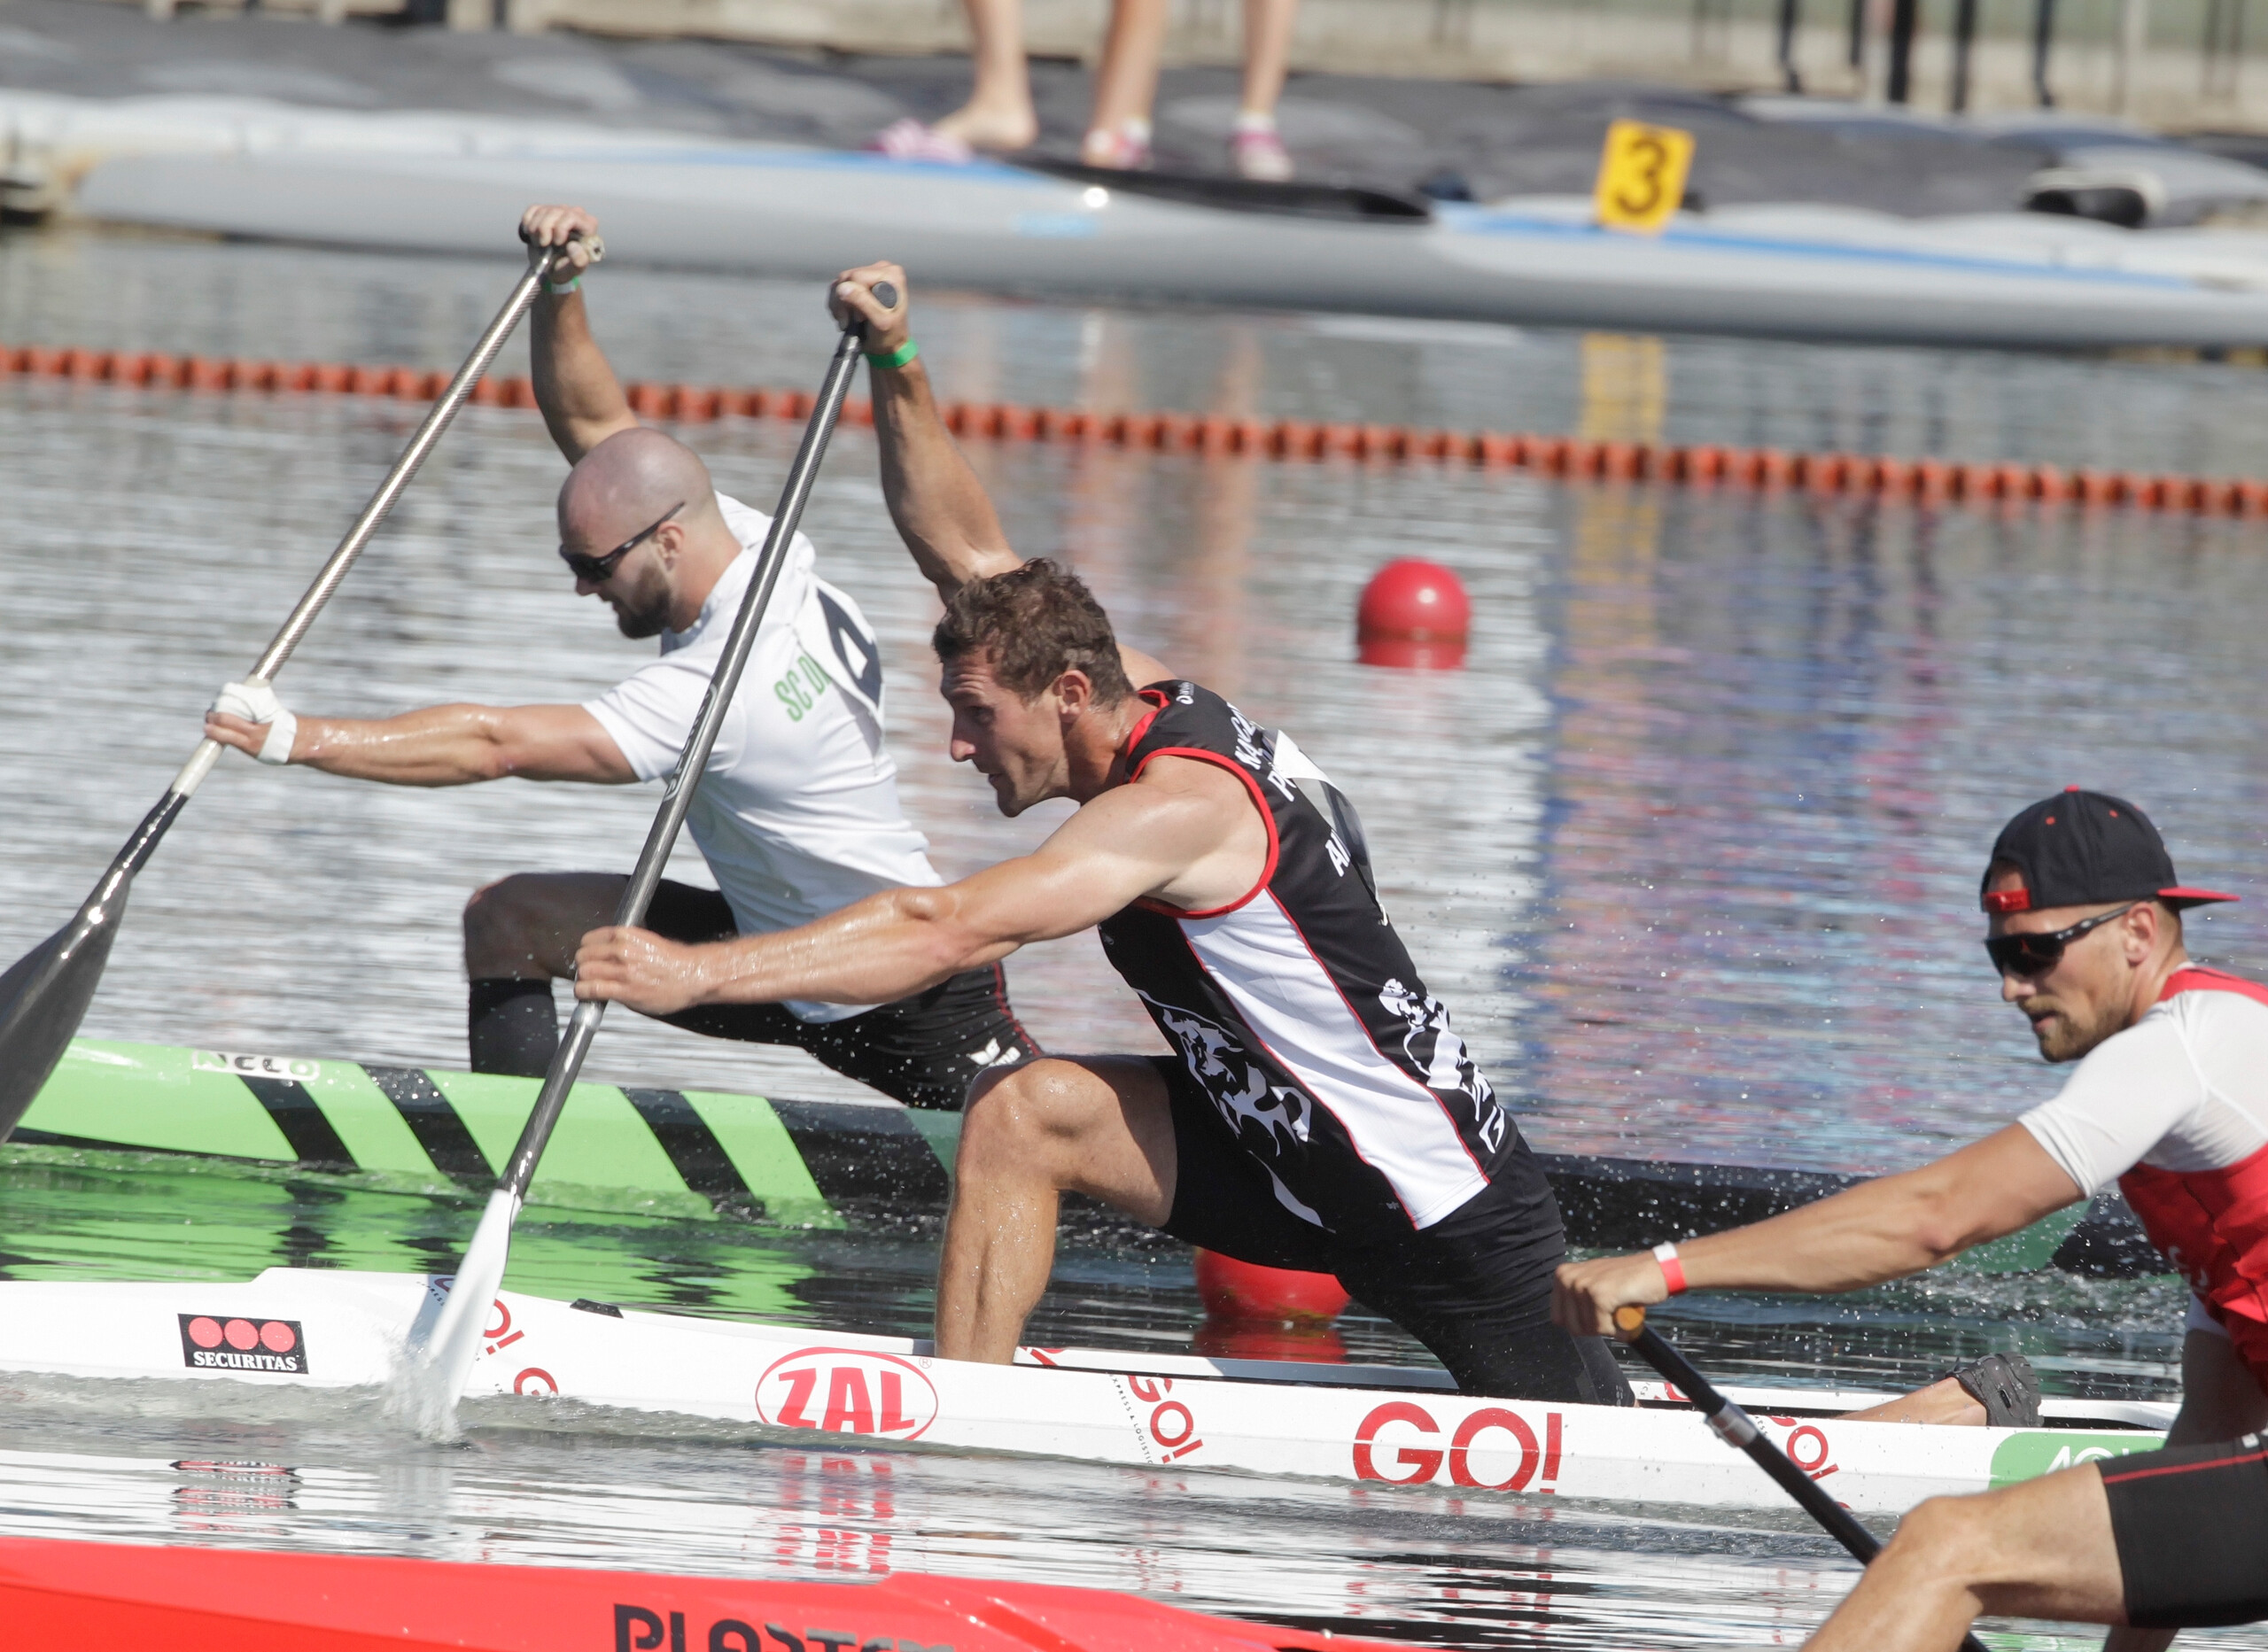 In Seitenaufnahme. Sebastian Brendel Paddel im Wettrennen mit zwei weiteren Kanuten, im Wasser. Auf seinem Kanu das GO! Logo